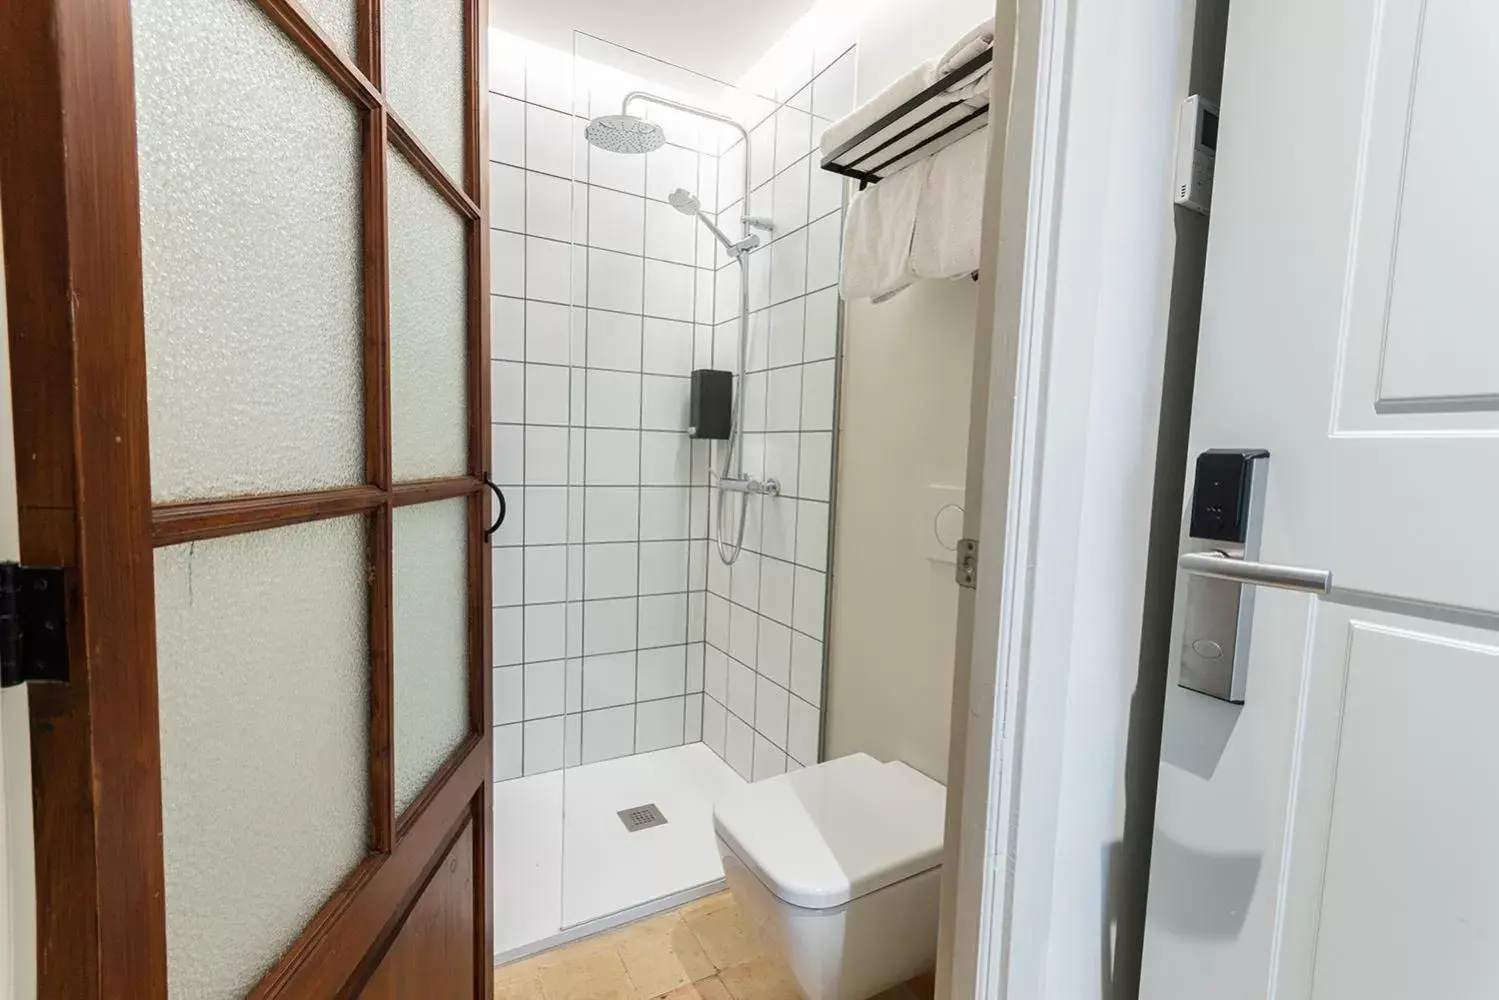 Bathroom in Unic - Turisme d'interior